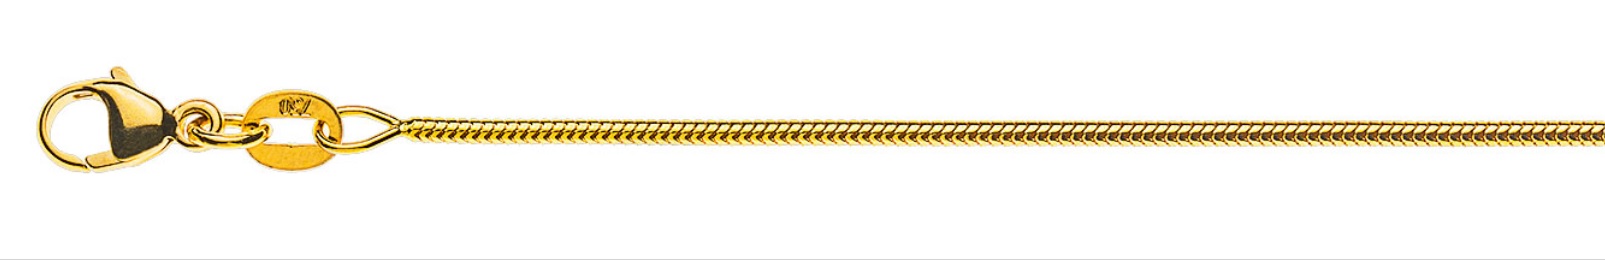 AURONOS Prestige Halskette Gelbgold 18K Schlangenkette 60cm 1.2mm